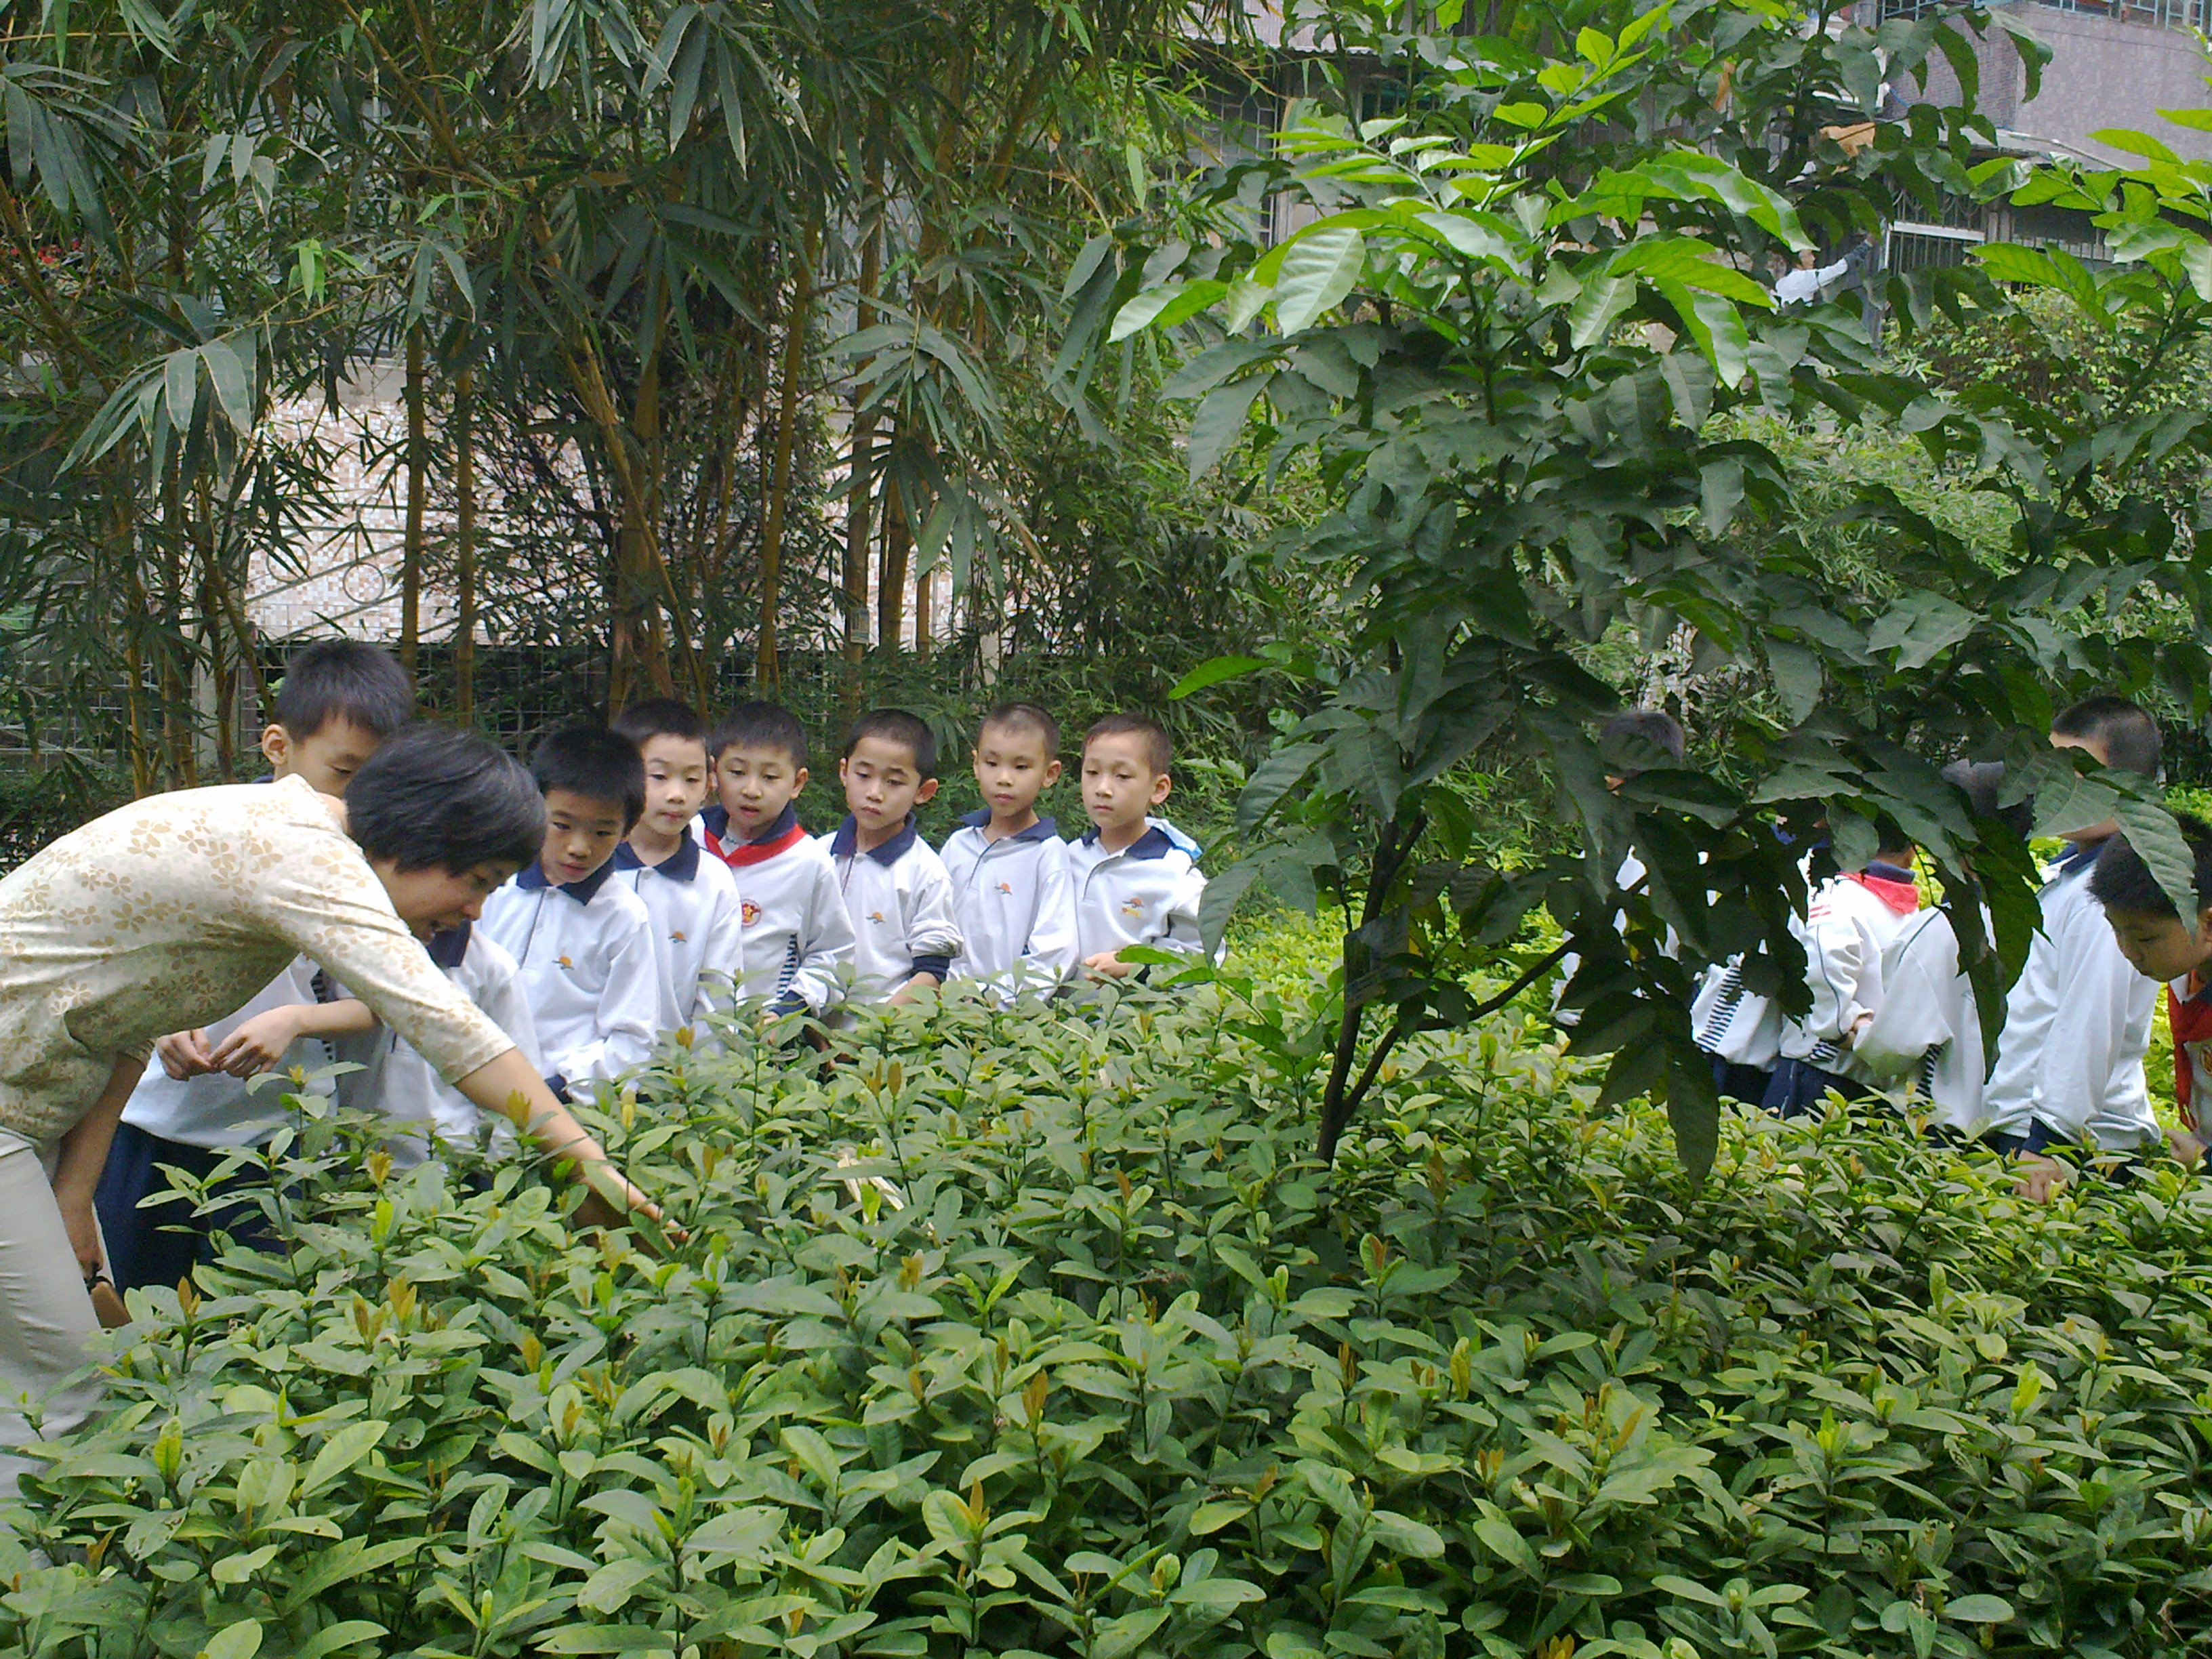 School children in a garden with their teacher